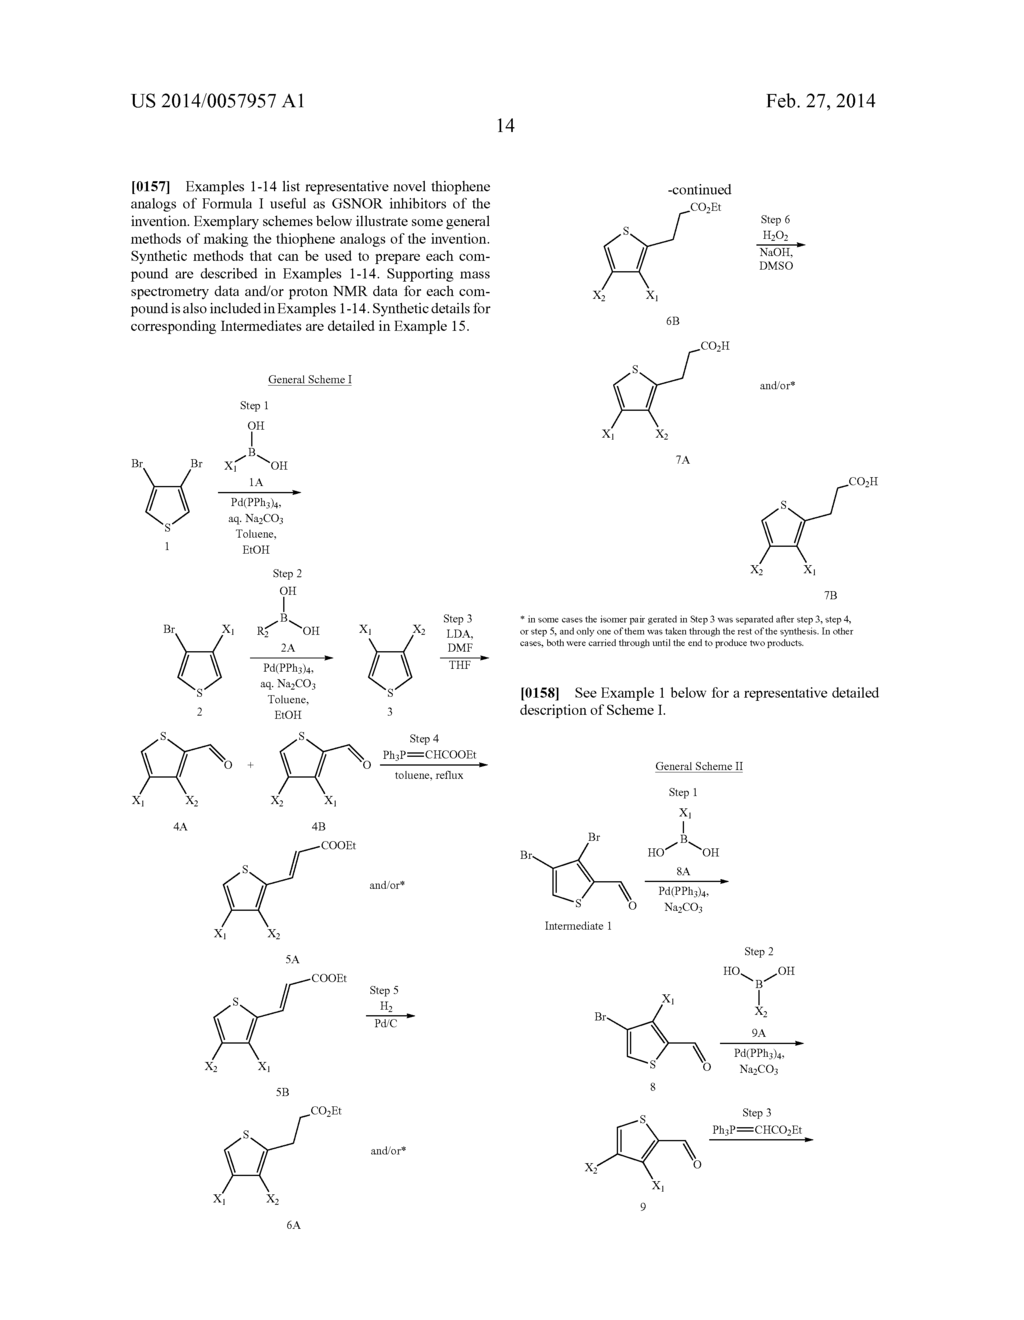 Novel Thiophene Inhibitors of S-Nitrosoglutathione Reductase - diagram, schematic, and image 15